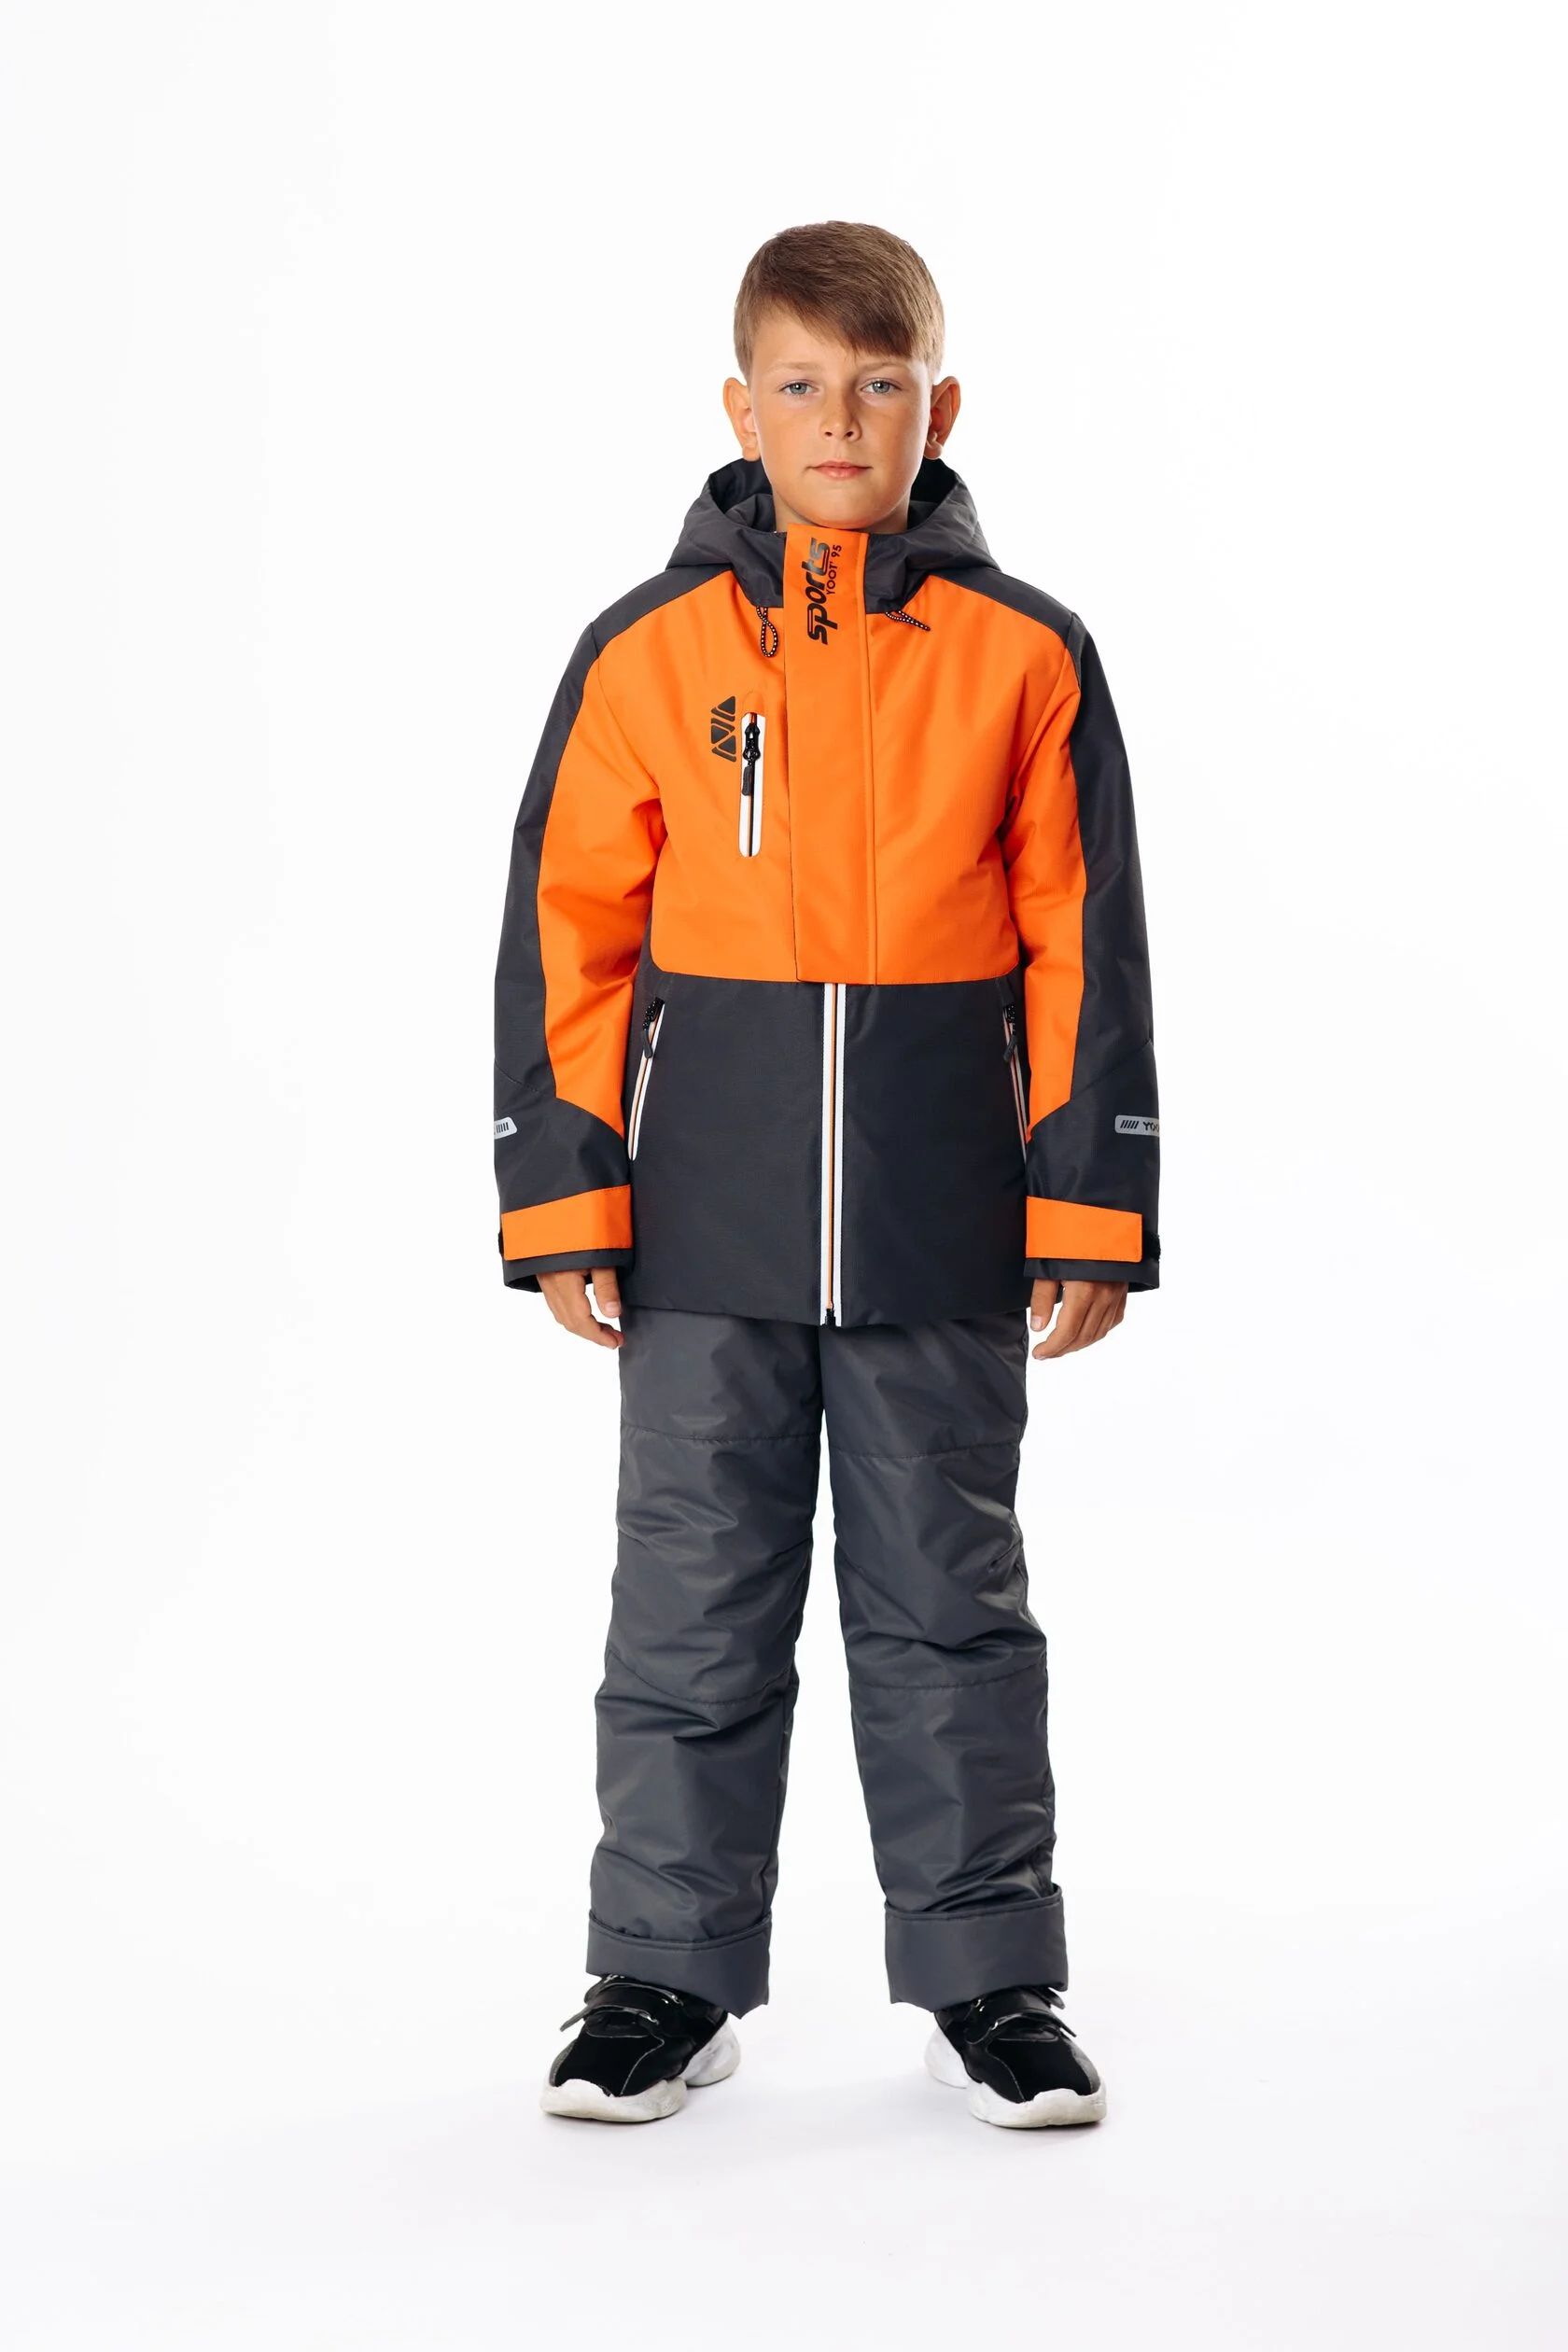 Комплект верхней одежды Yoot 2505 оранжевый, 116 комплект верхней одежды kvartet 661 м оранжевый 110